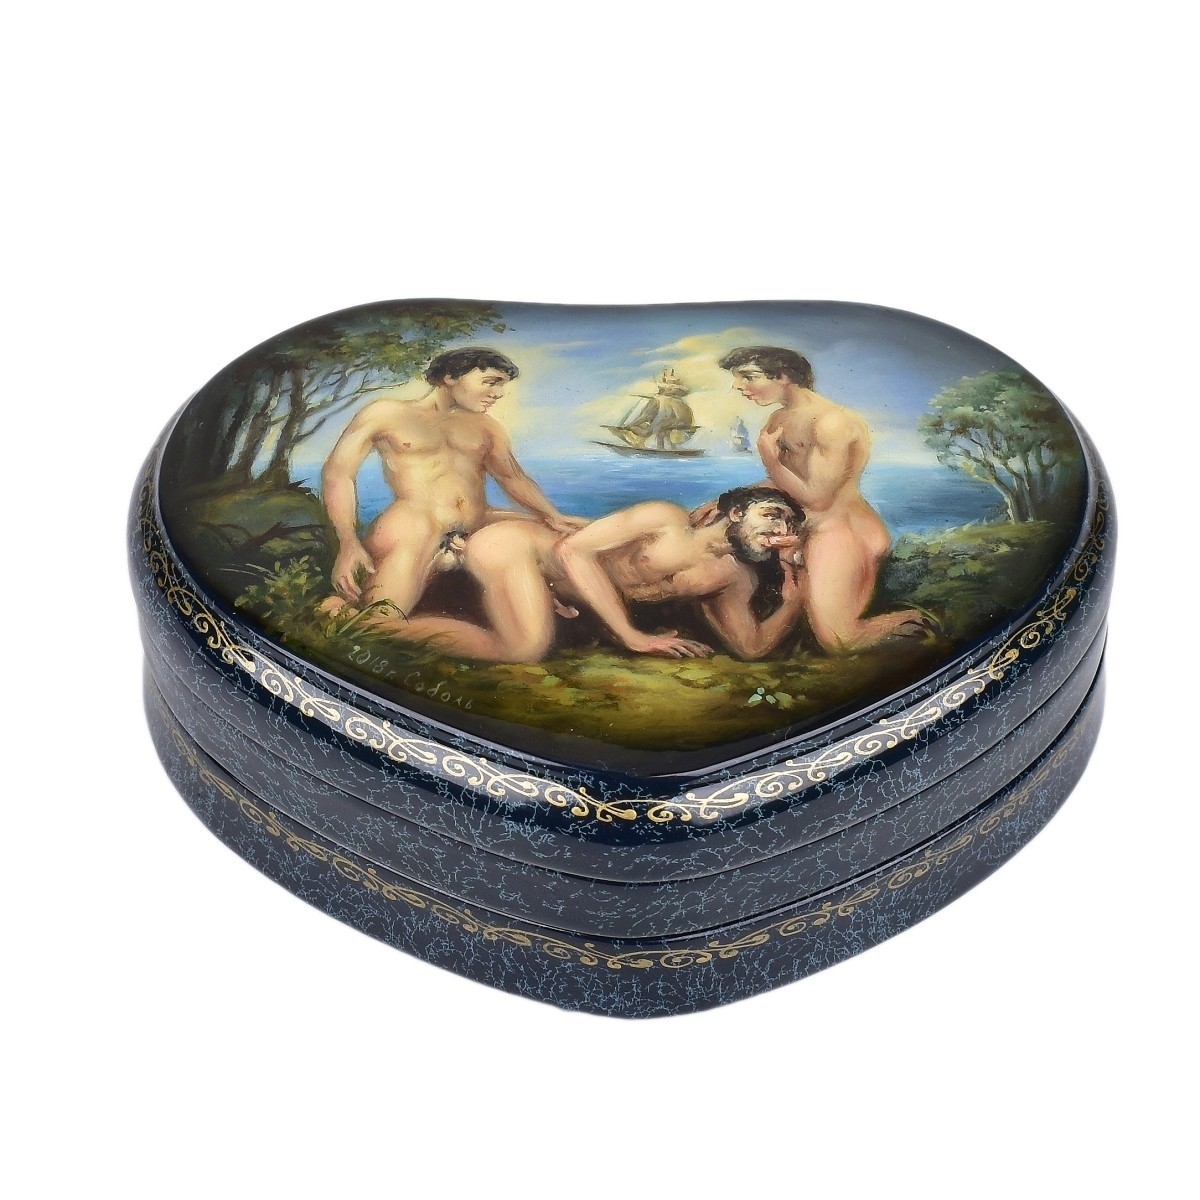 Russian Erotic Lacquer Box